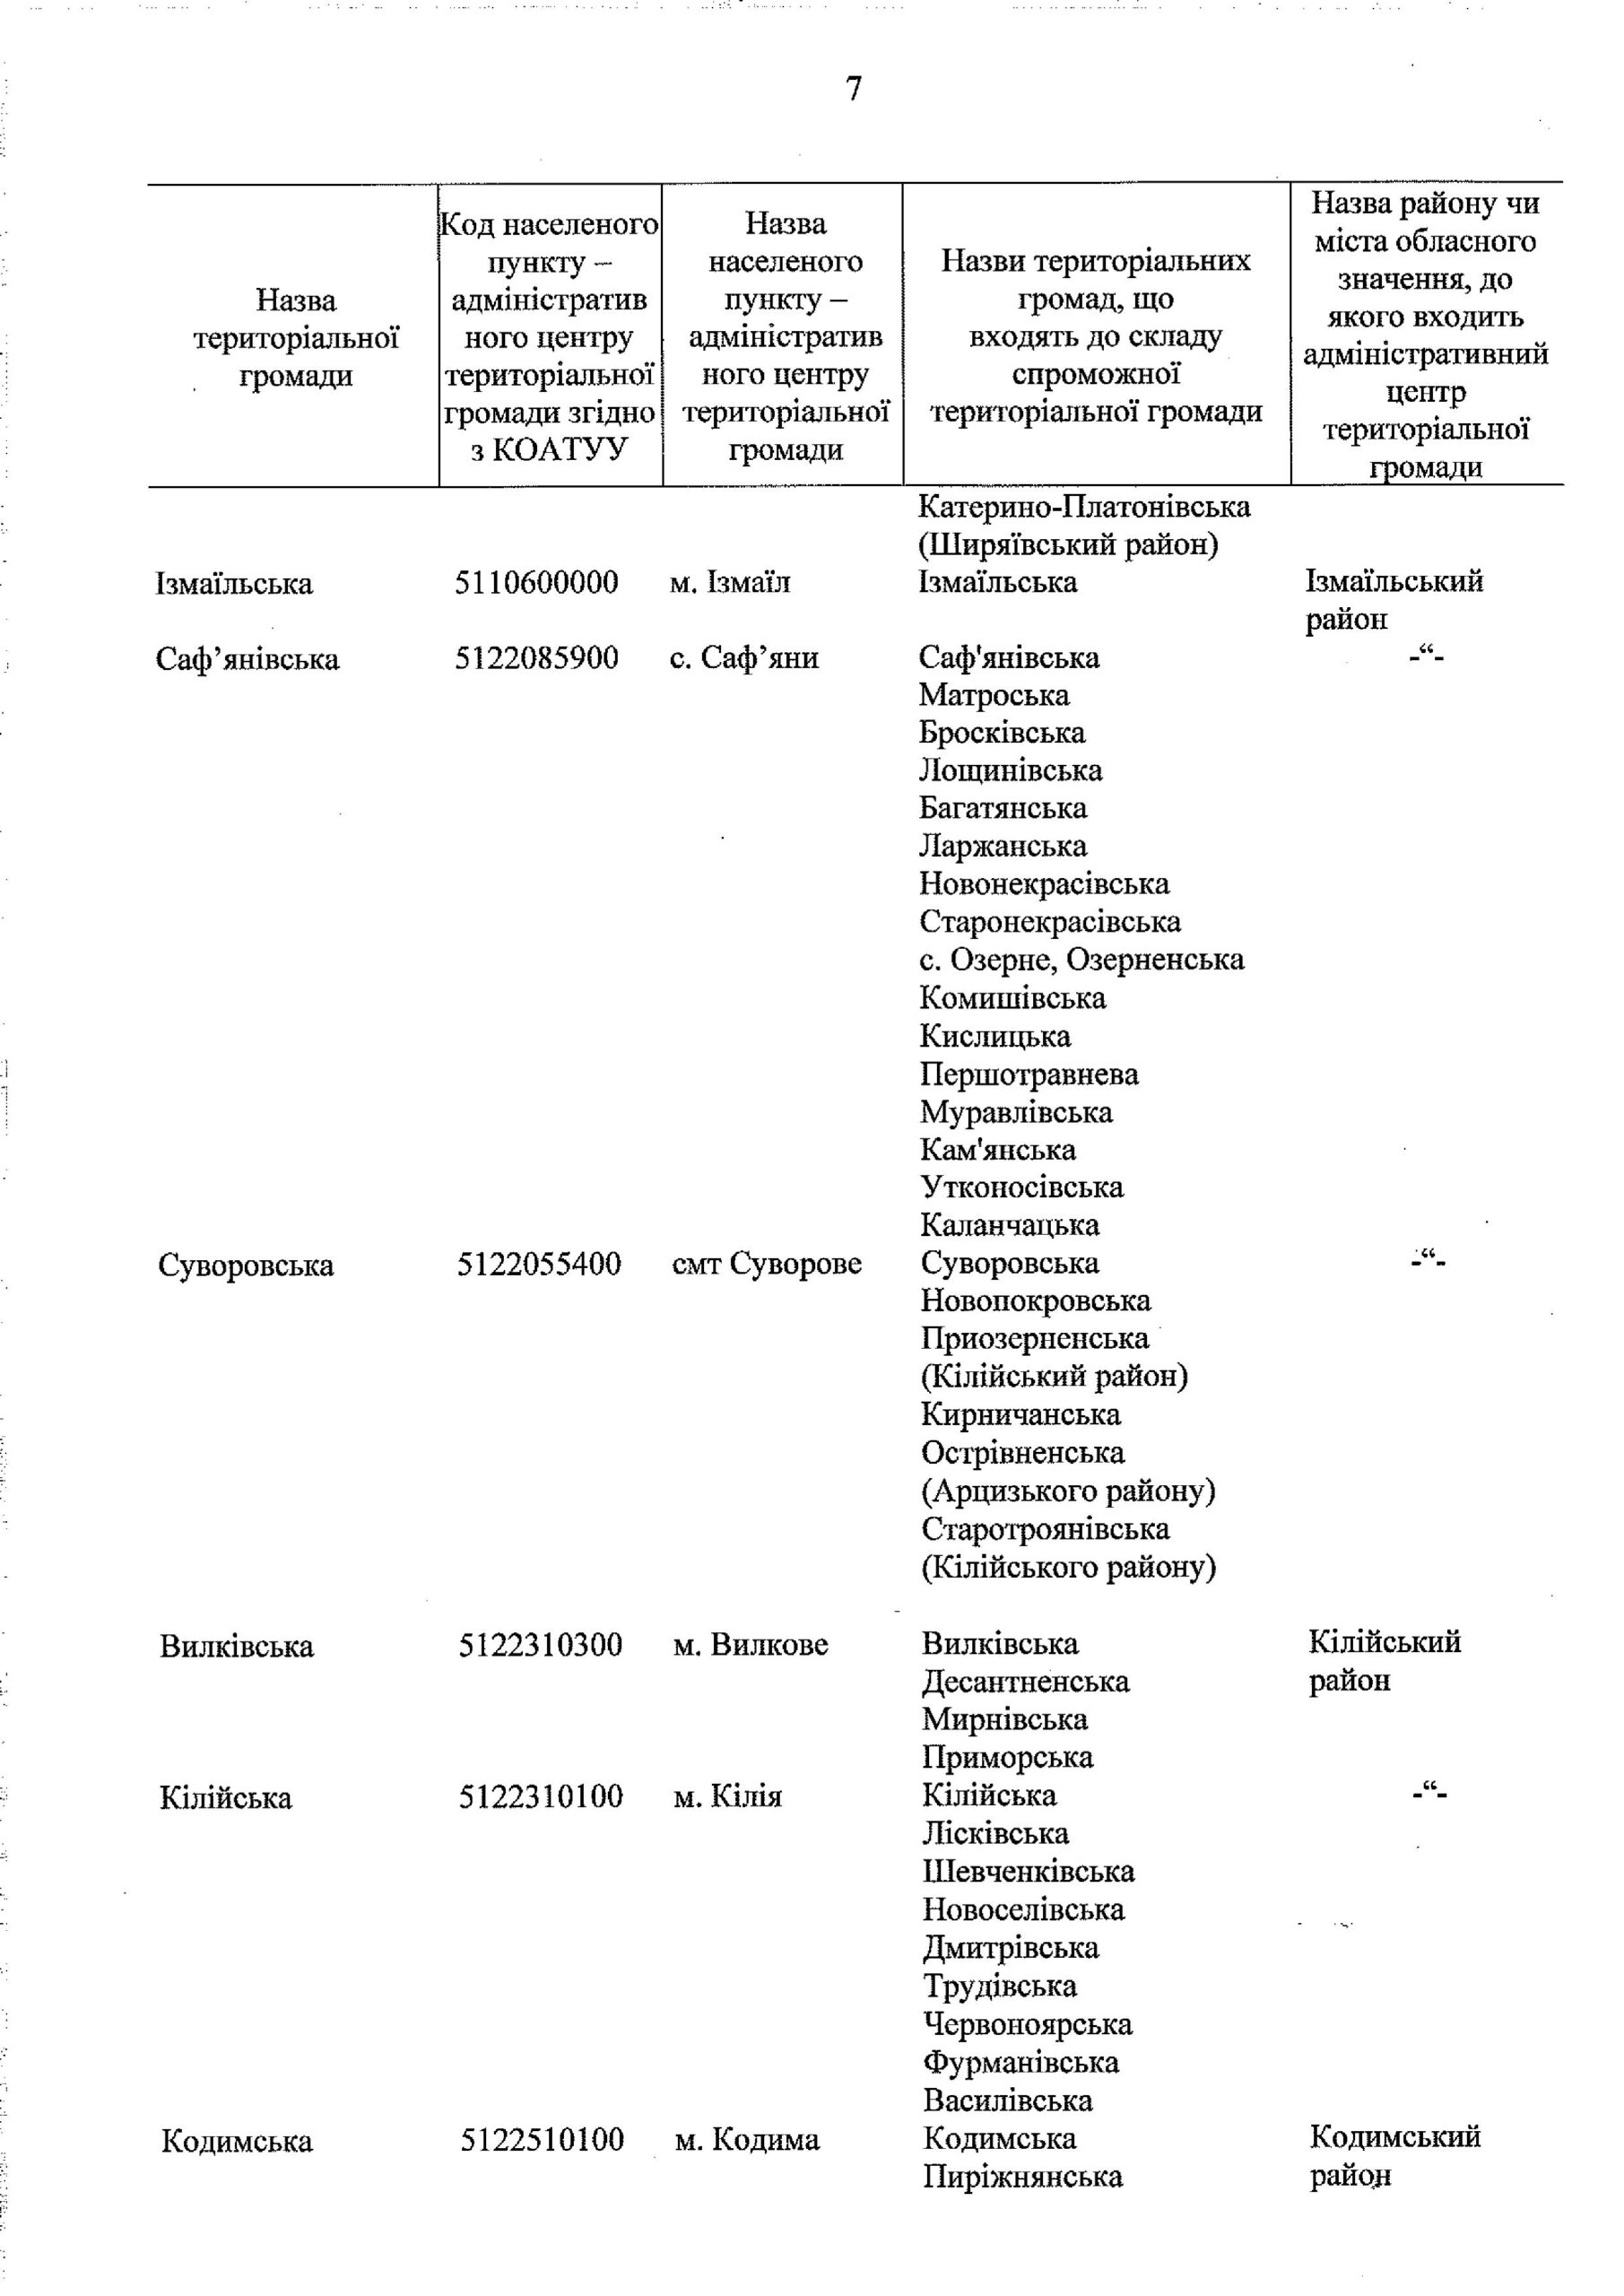 Кабмин утвердил перспективный план формирования ОТГ в Одесской области (документ)